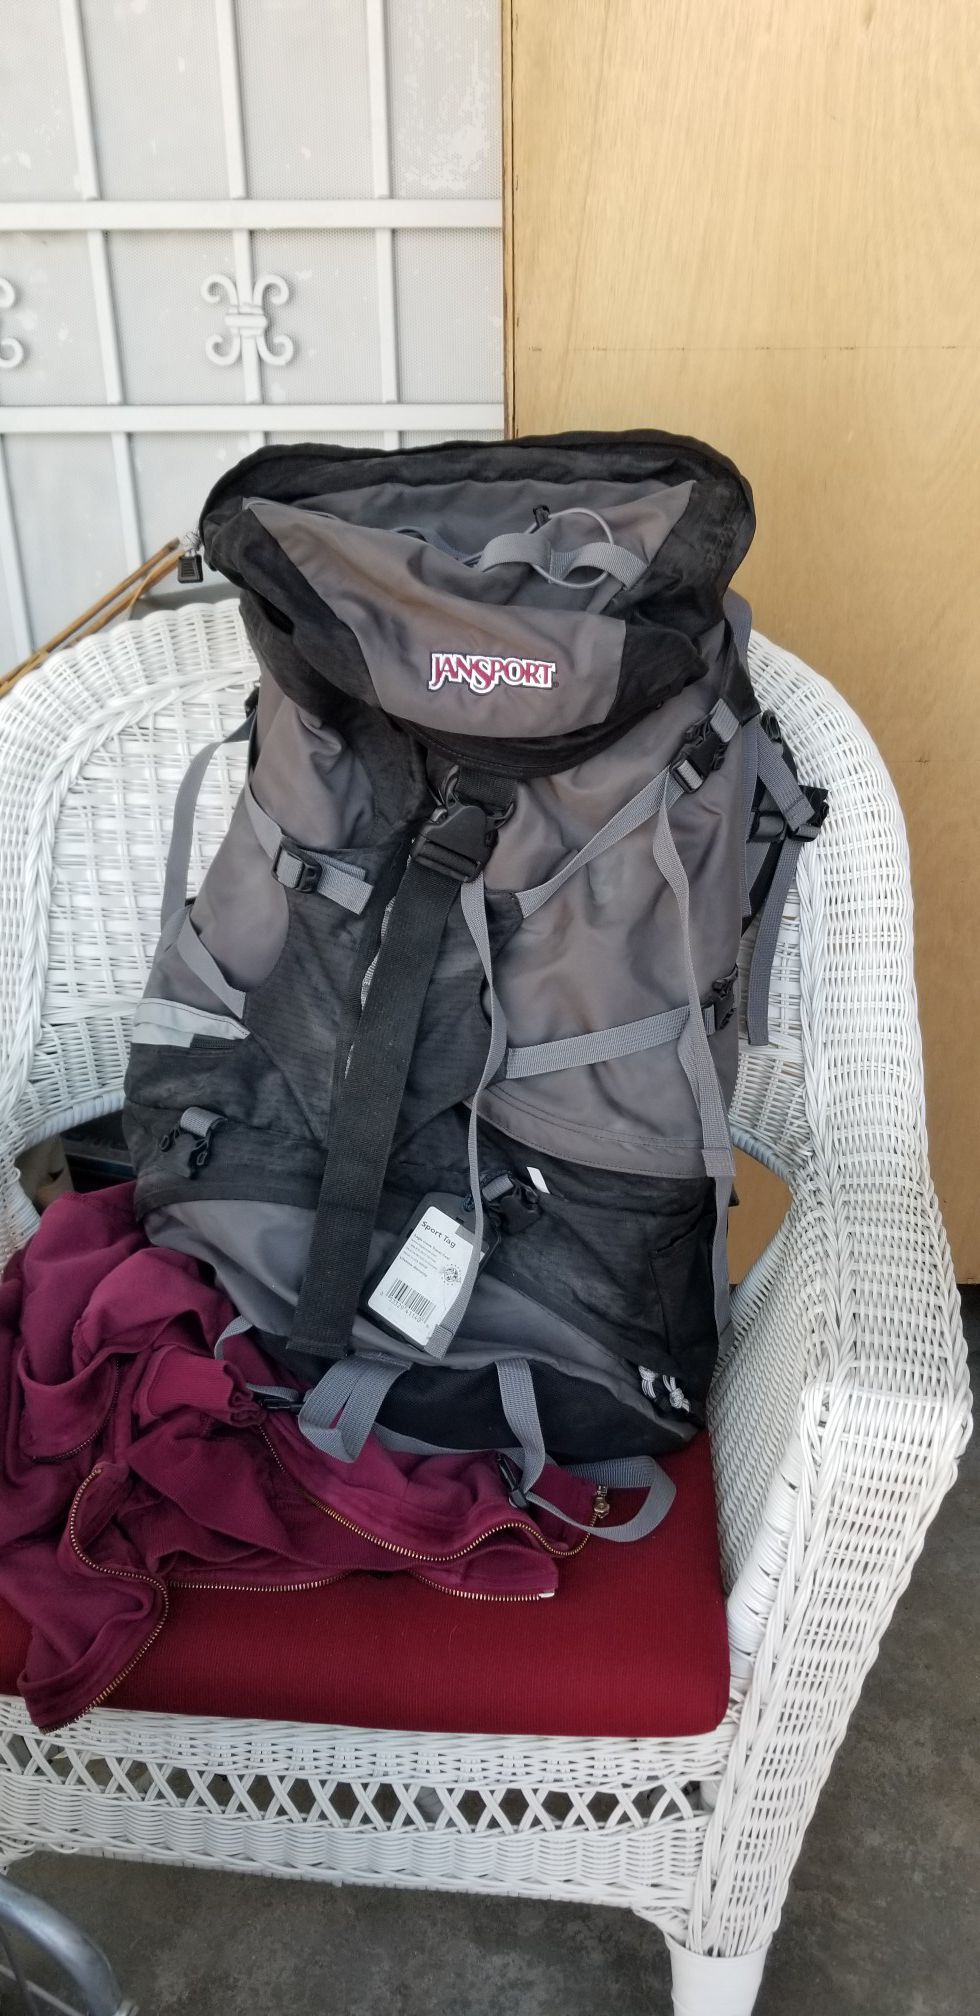 Jansport Juno 73 hiking backpack